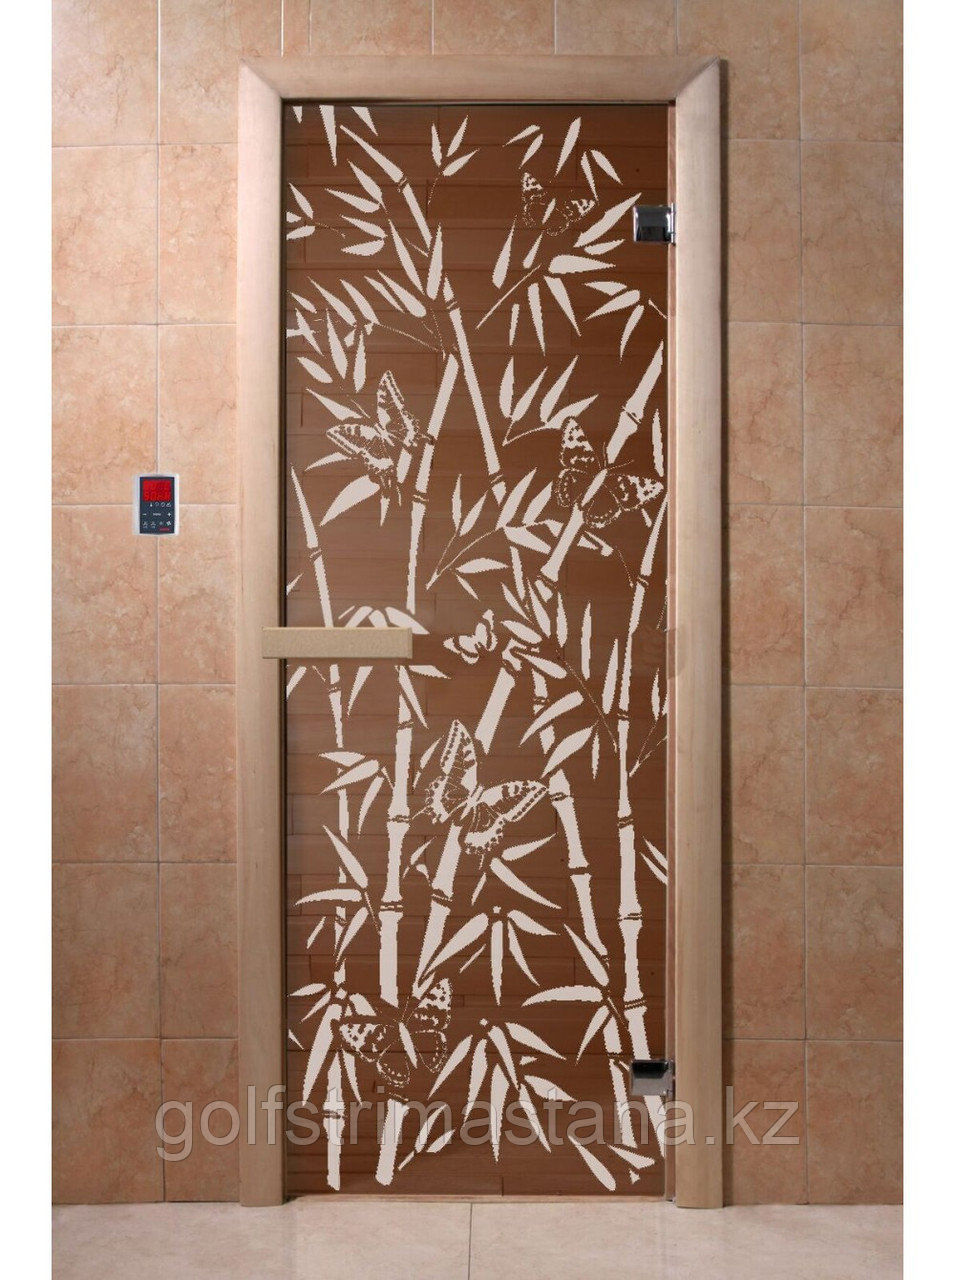 Дверь для бани "Бамбук и бабочки" бронза 1900*700, 6мм, 2 петли